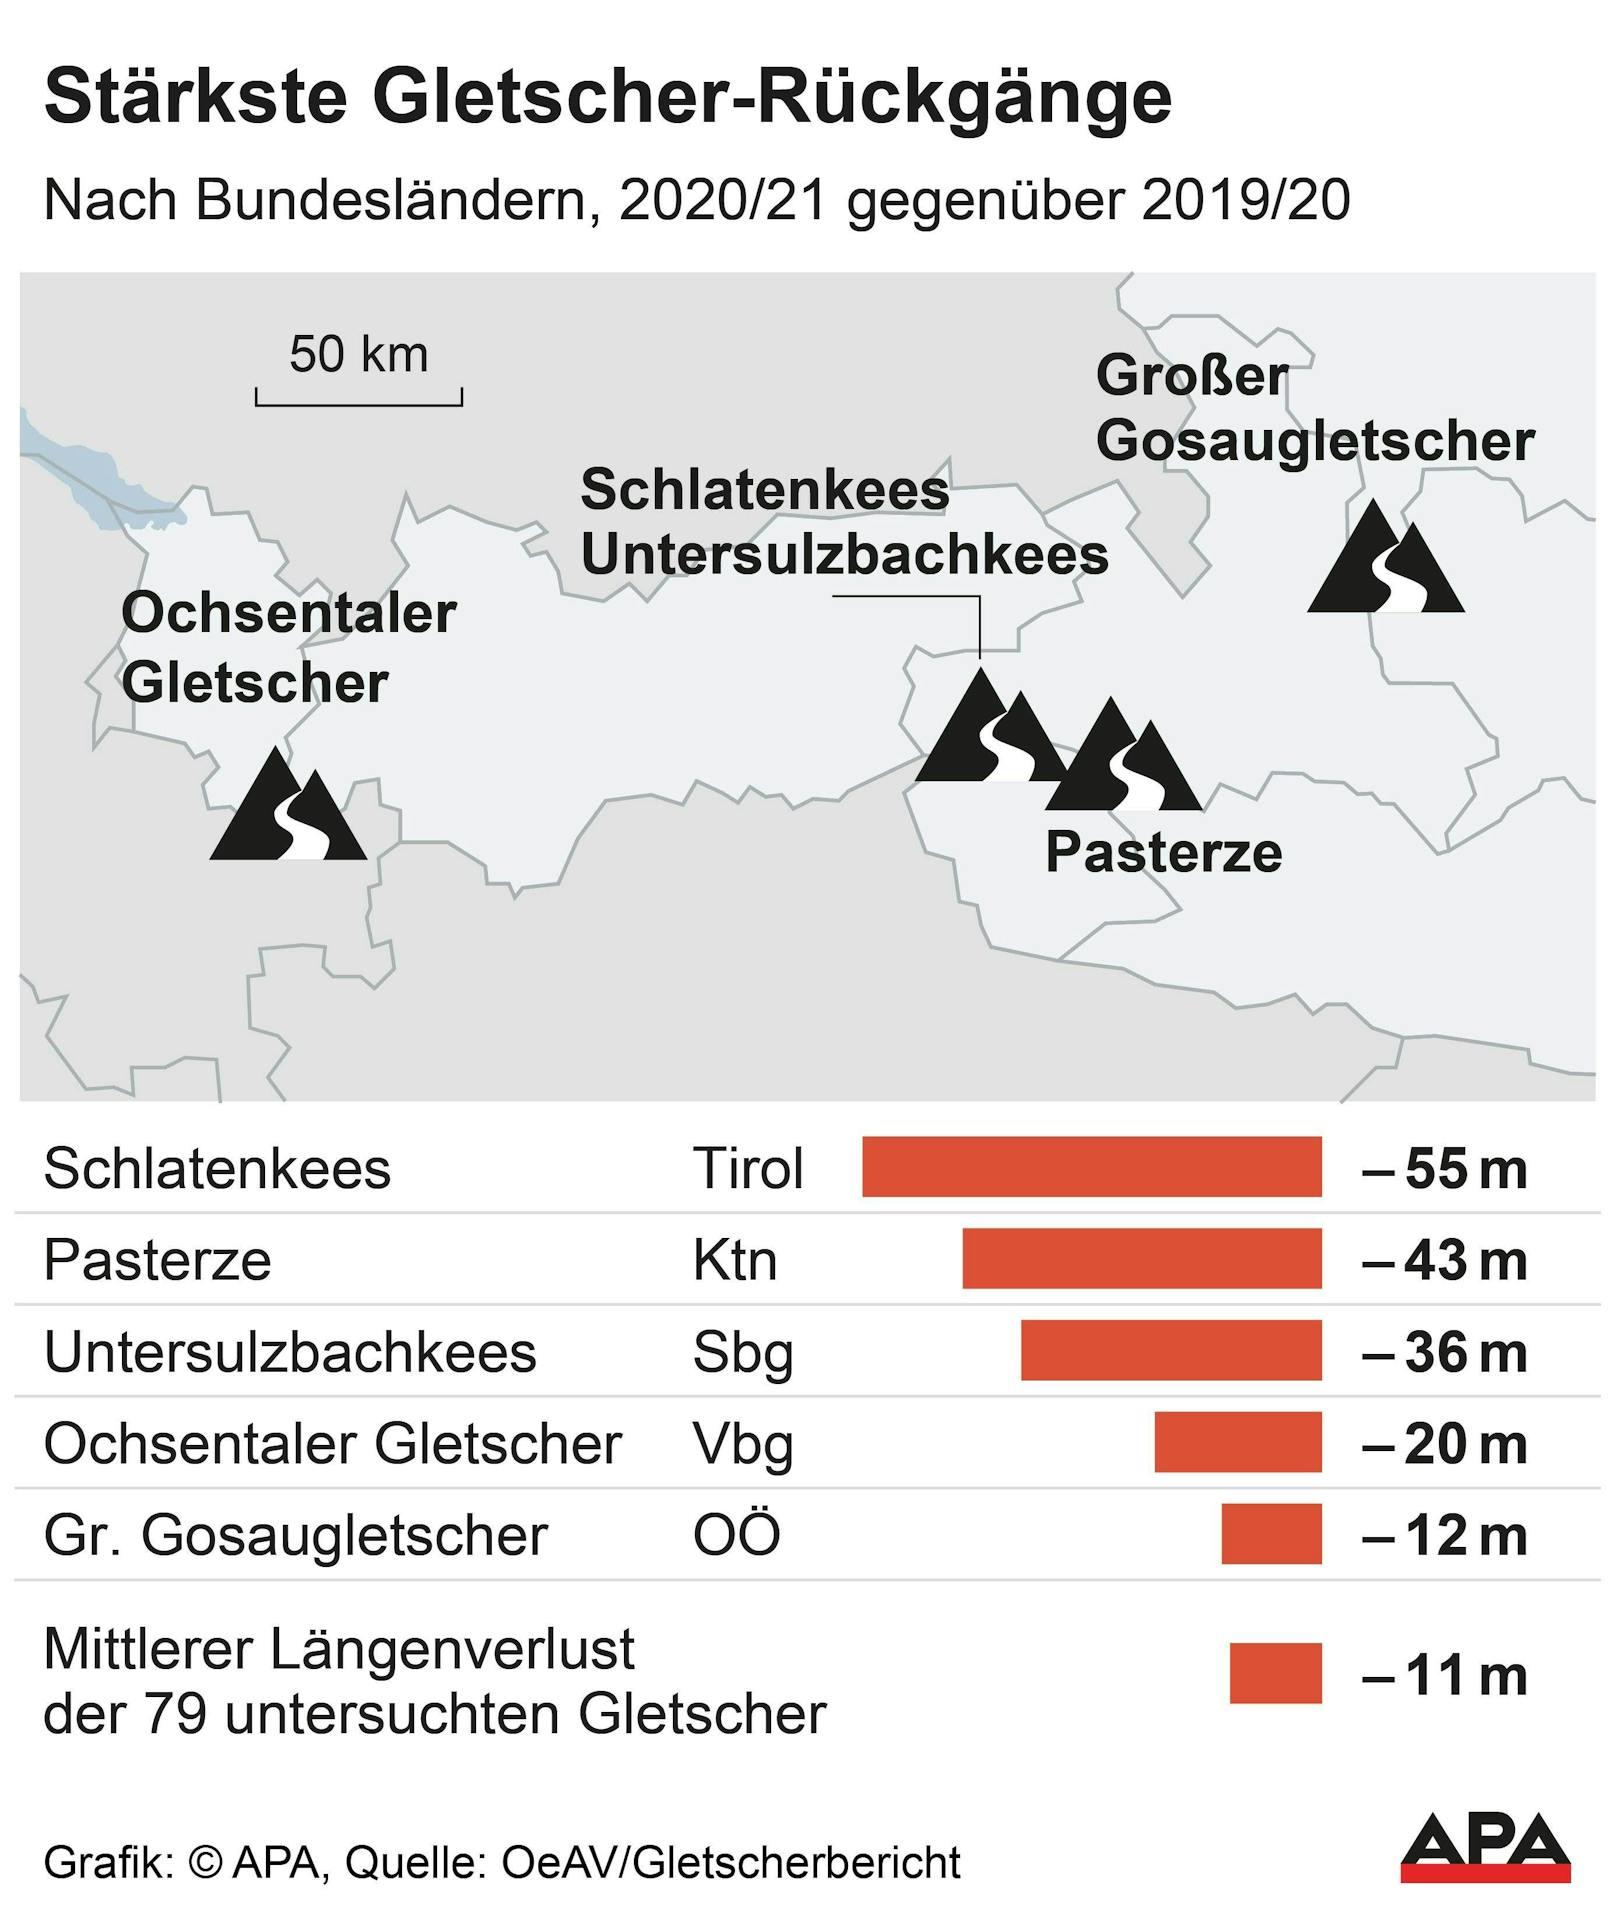 Der Gletscherbericht des Österreichischen Alpenvereins weist in der Messperiode 2020/21 einen durchschnittlichen Rückzug der Gletscher mit elf Metern aus, im Vorjahr waren es gar 15 Meter.